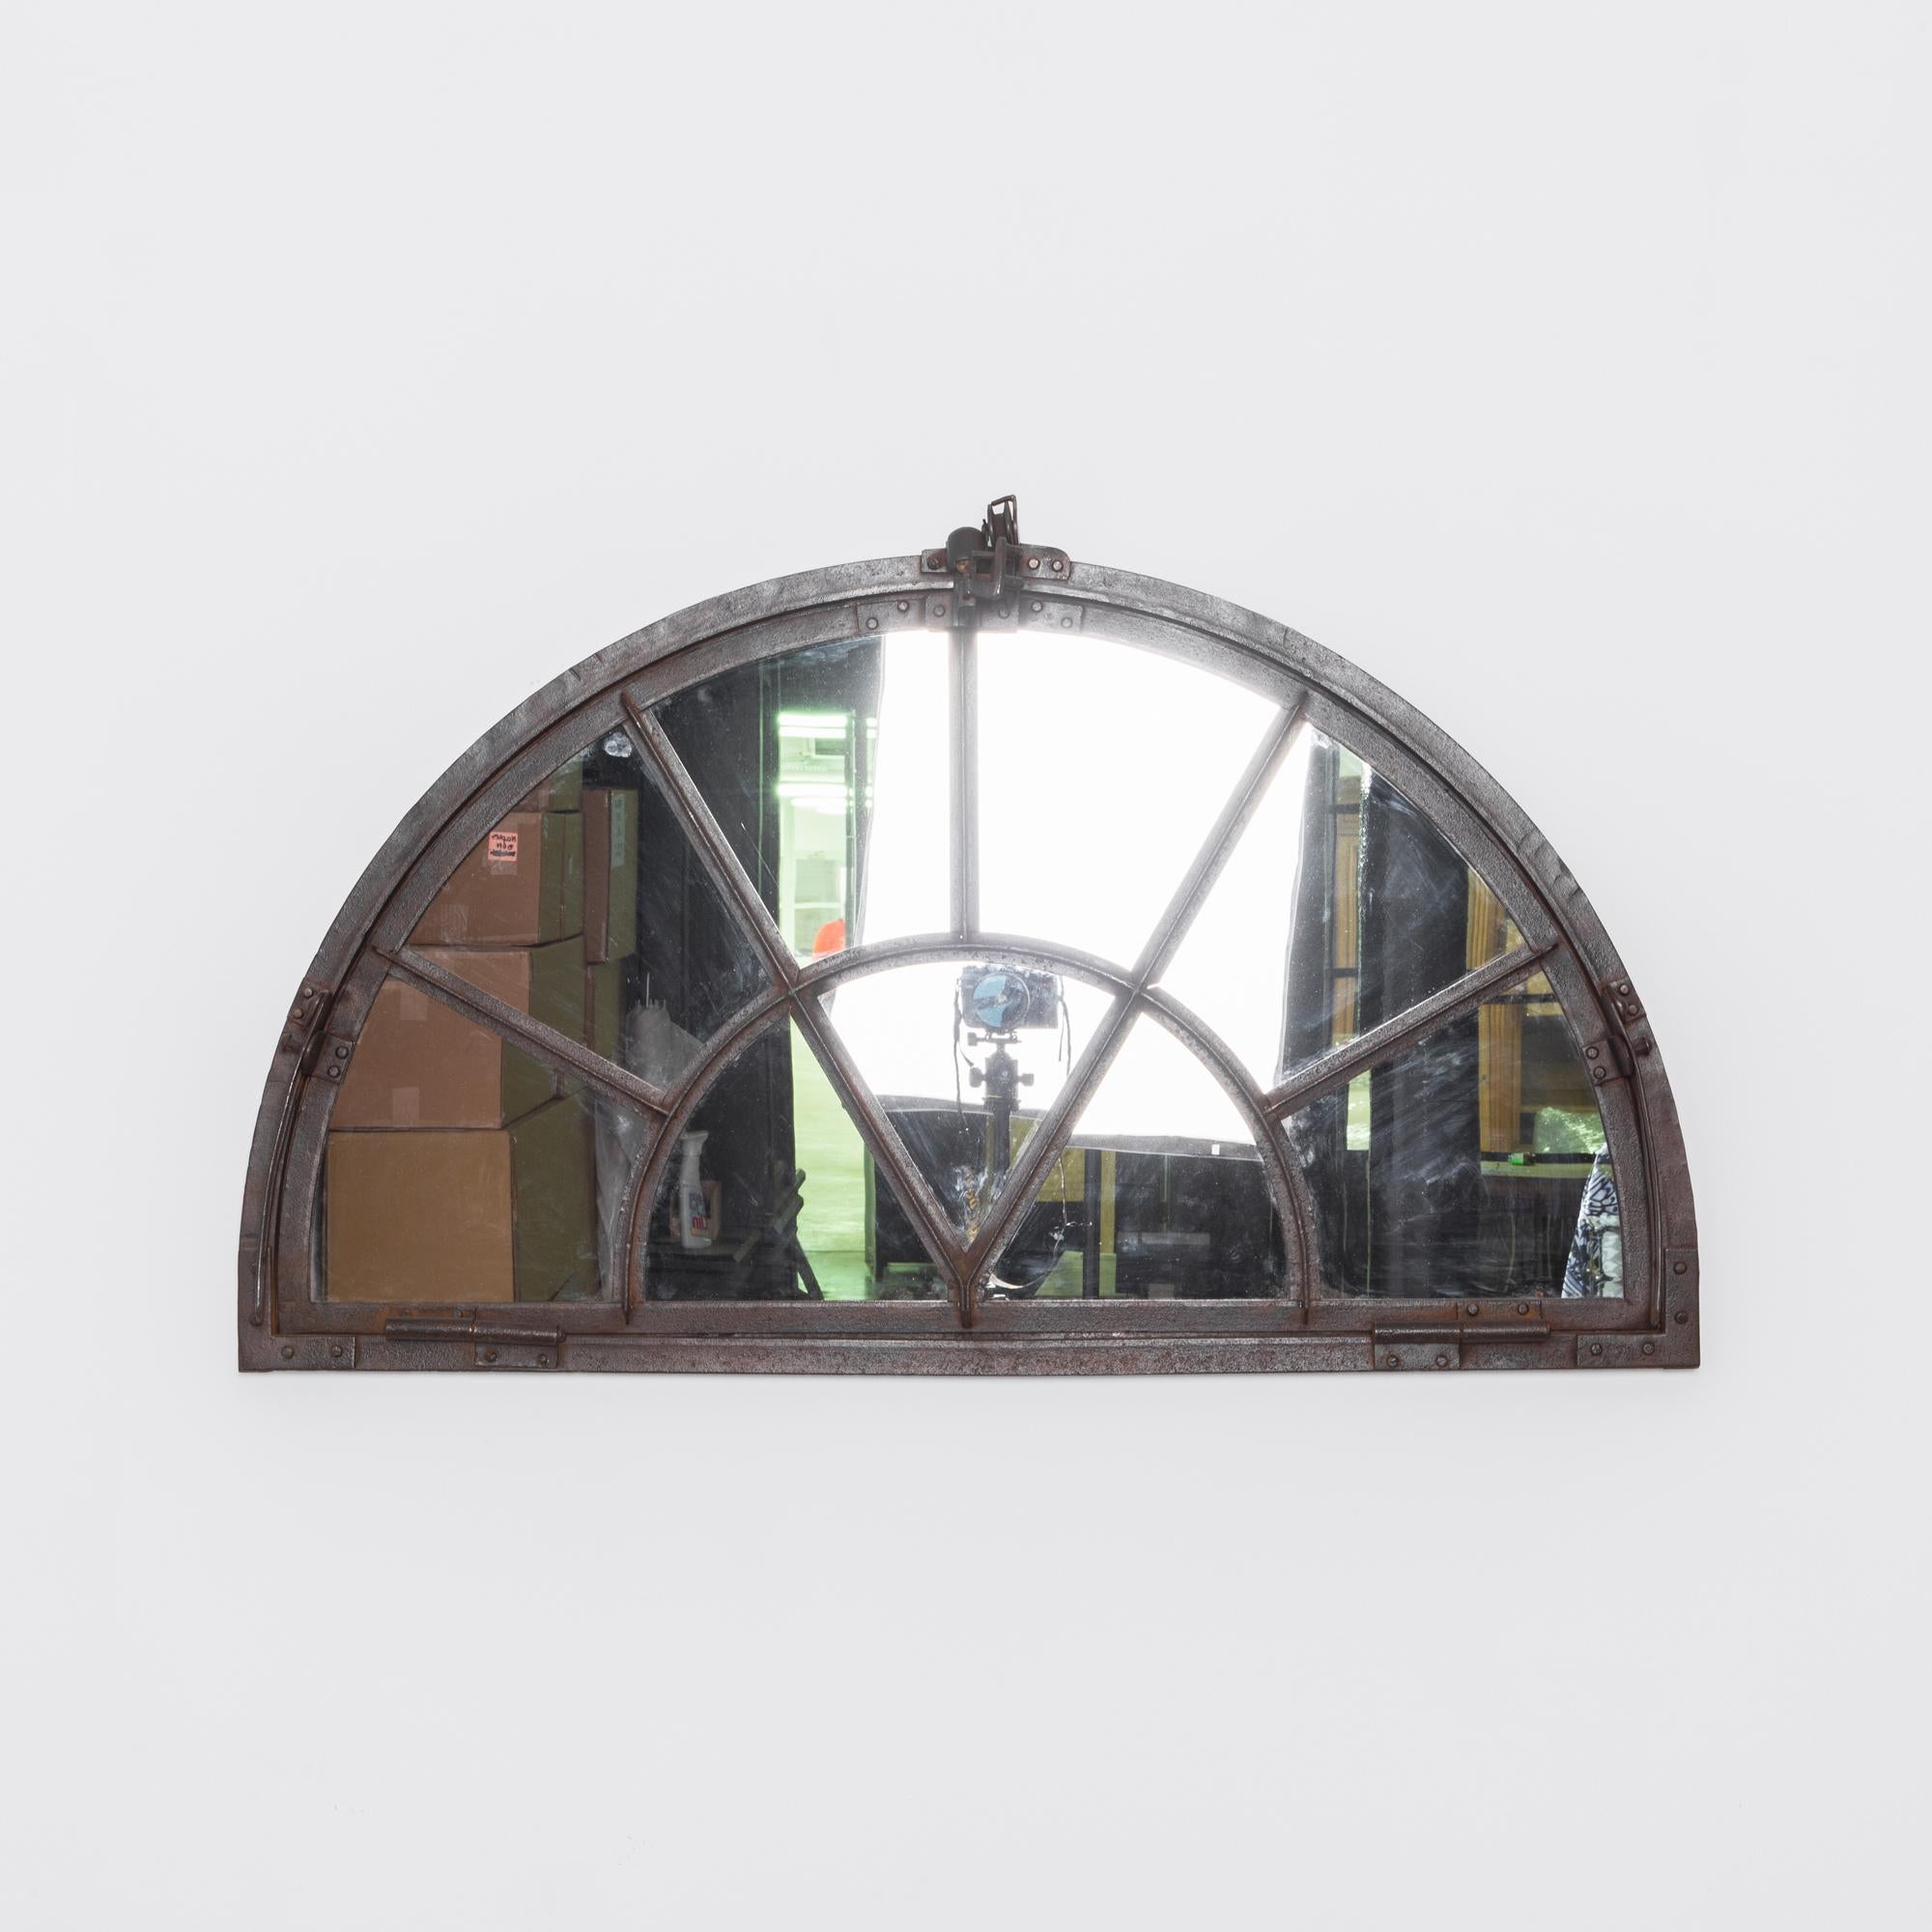 Transportez-vous au début des années 1900 avec cette exquise fenêtre à miroir en fer français des années 1900. Cette fenêtre ancienne, dotée d'un impressionnant châssis demi-rond à dôme de 8 carreaux, dégage un charme industriel. Le cadre en fer